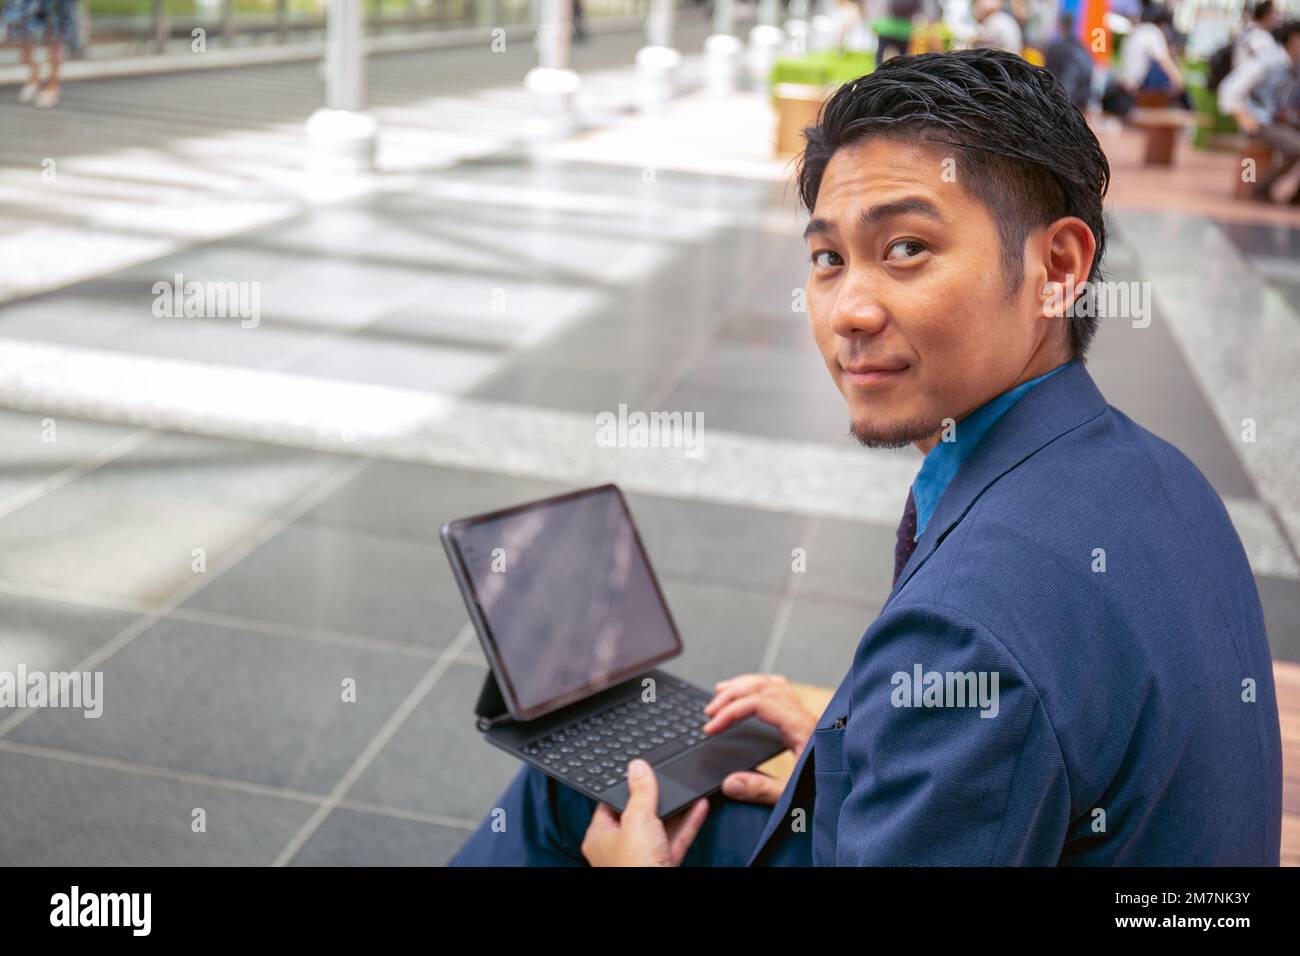 Ein junger Geschäftsmann in einem blauen Anzug in einer Stadtmitte, der mit einem digitalen Tablet auf einer Bank sitzt und über seine Schulter schaut. Stockfoto